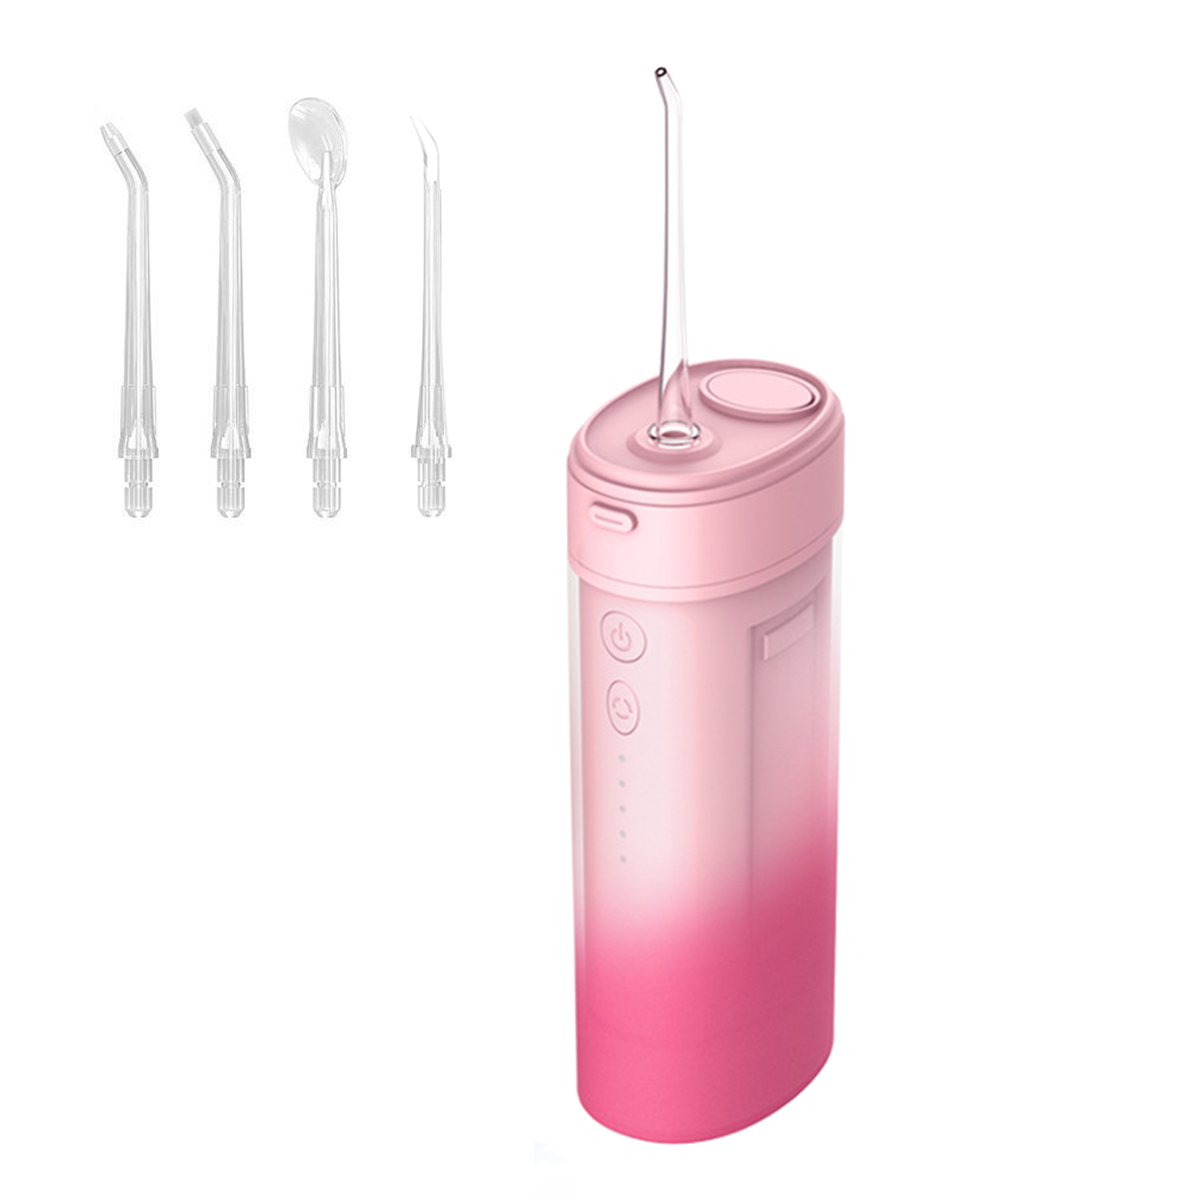 KINSI Munddusche Modi/4 4 Düsen, Elektrische, Zahnreiniger, Oral Care Dentalwerkzeug IPX7